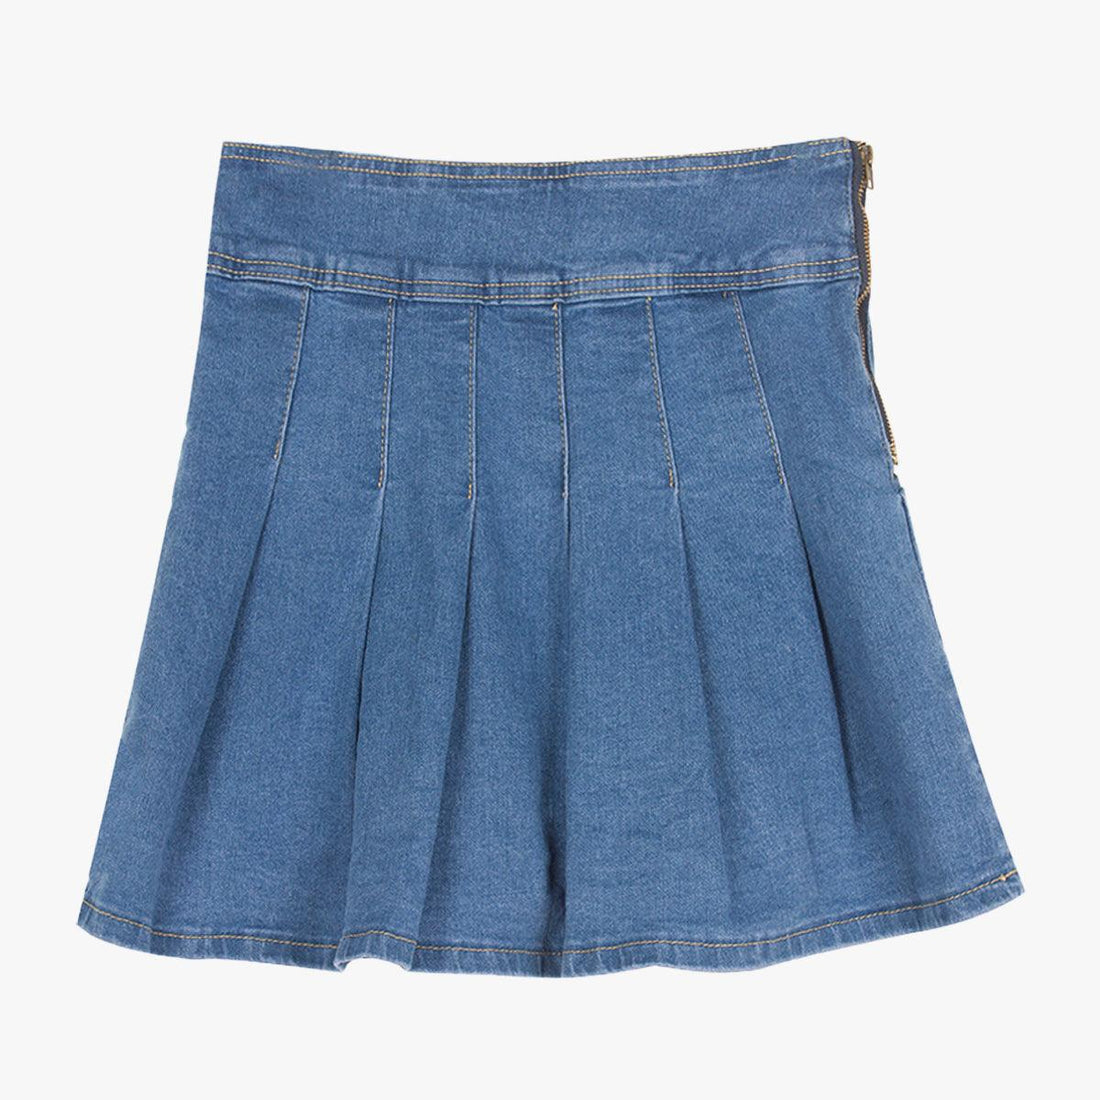 Retro Pleated High Waist Denim Skirt • Aesthetic Clothes